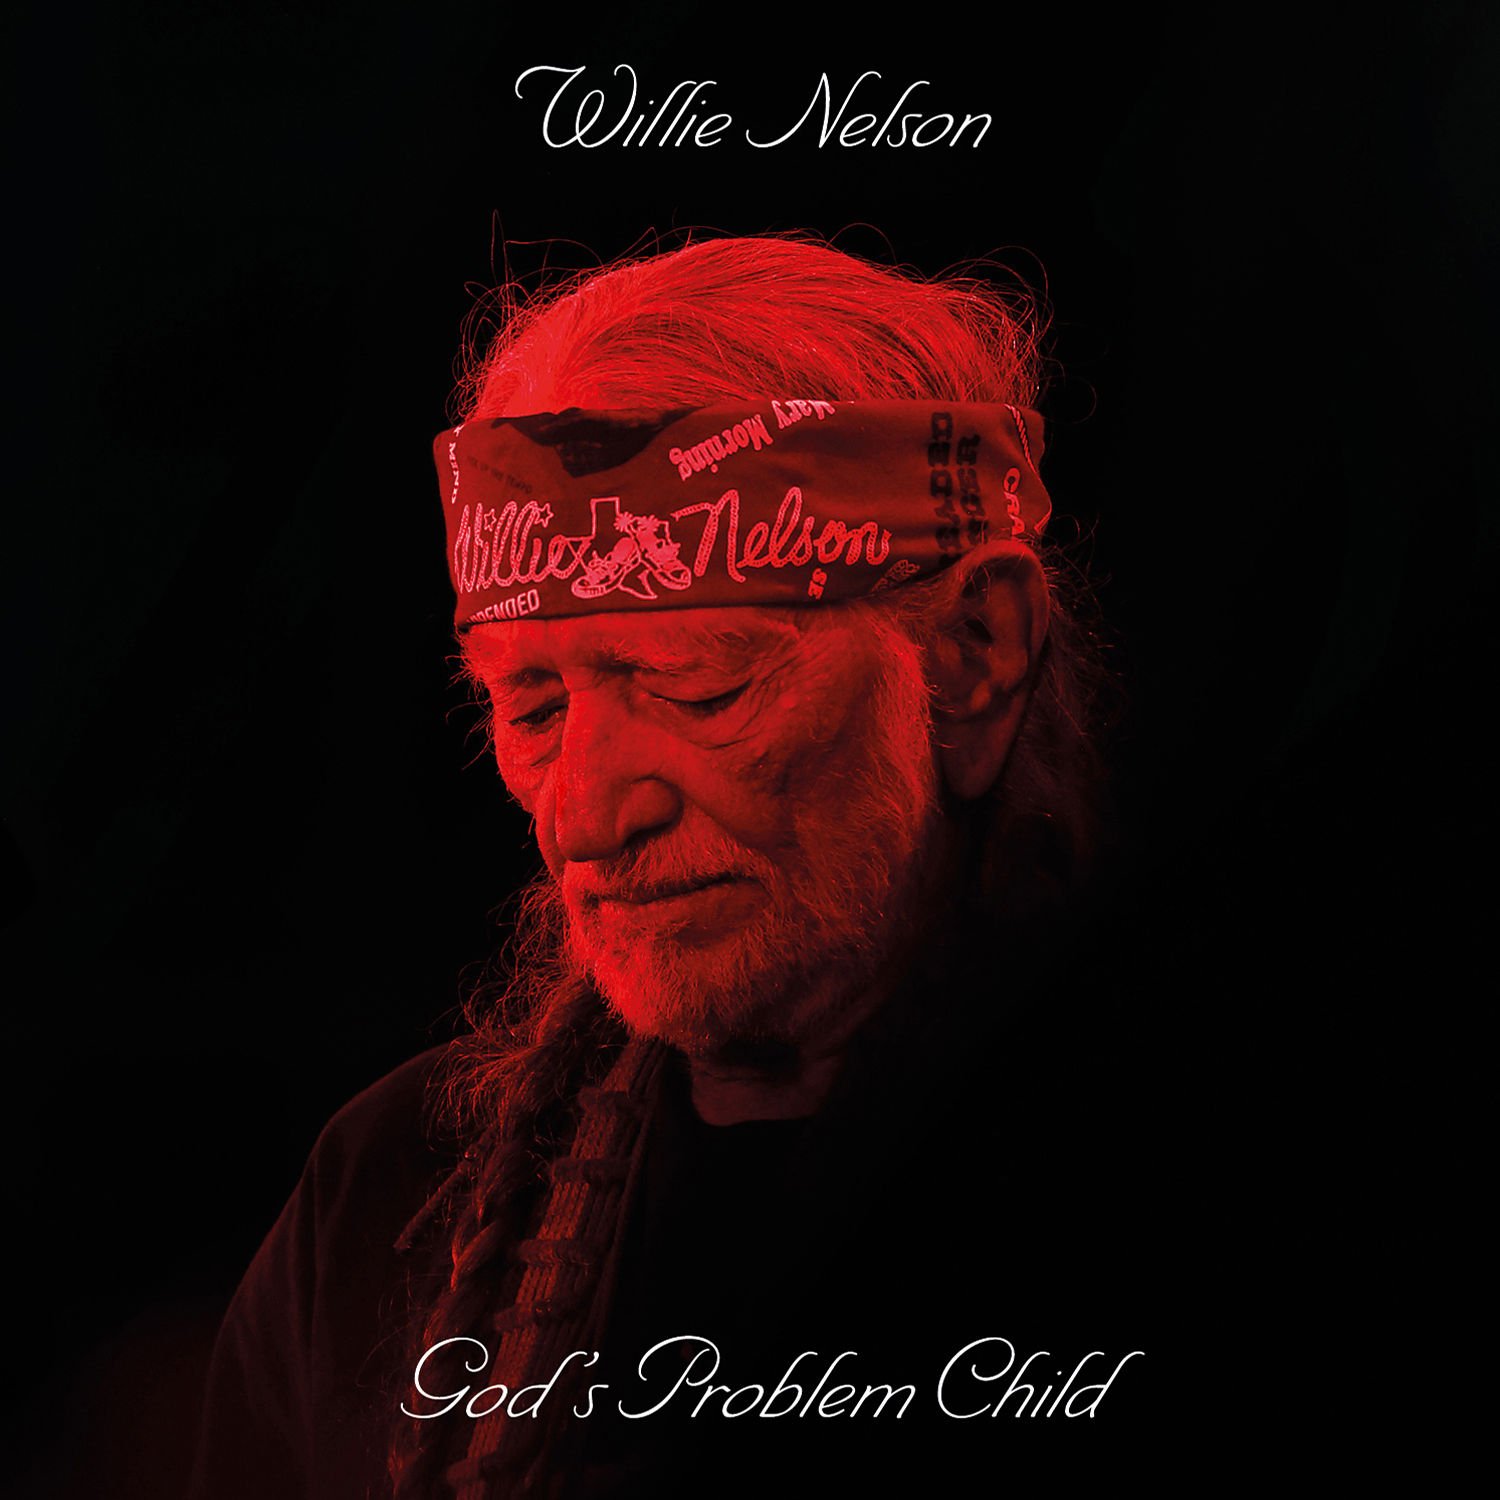 Willie Nelson-Gods Problem Child-24-96-WEB-FLAC-2017-OBZEN